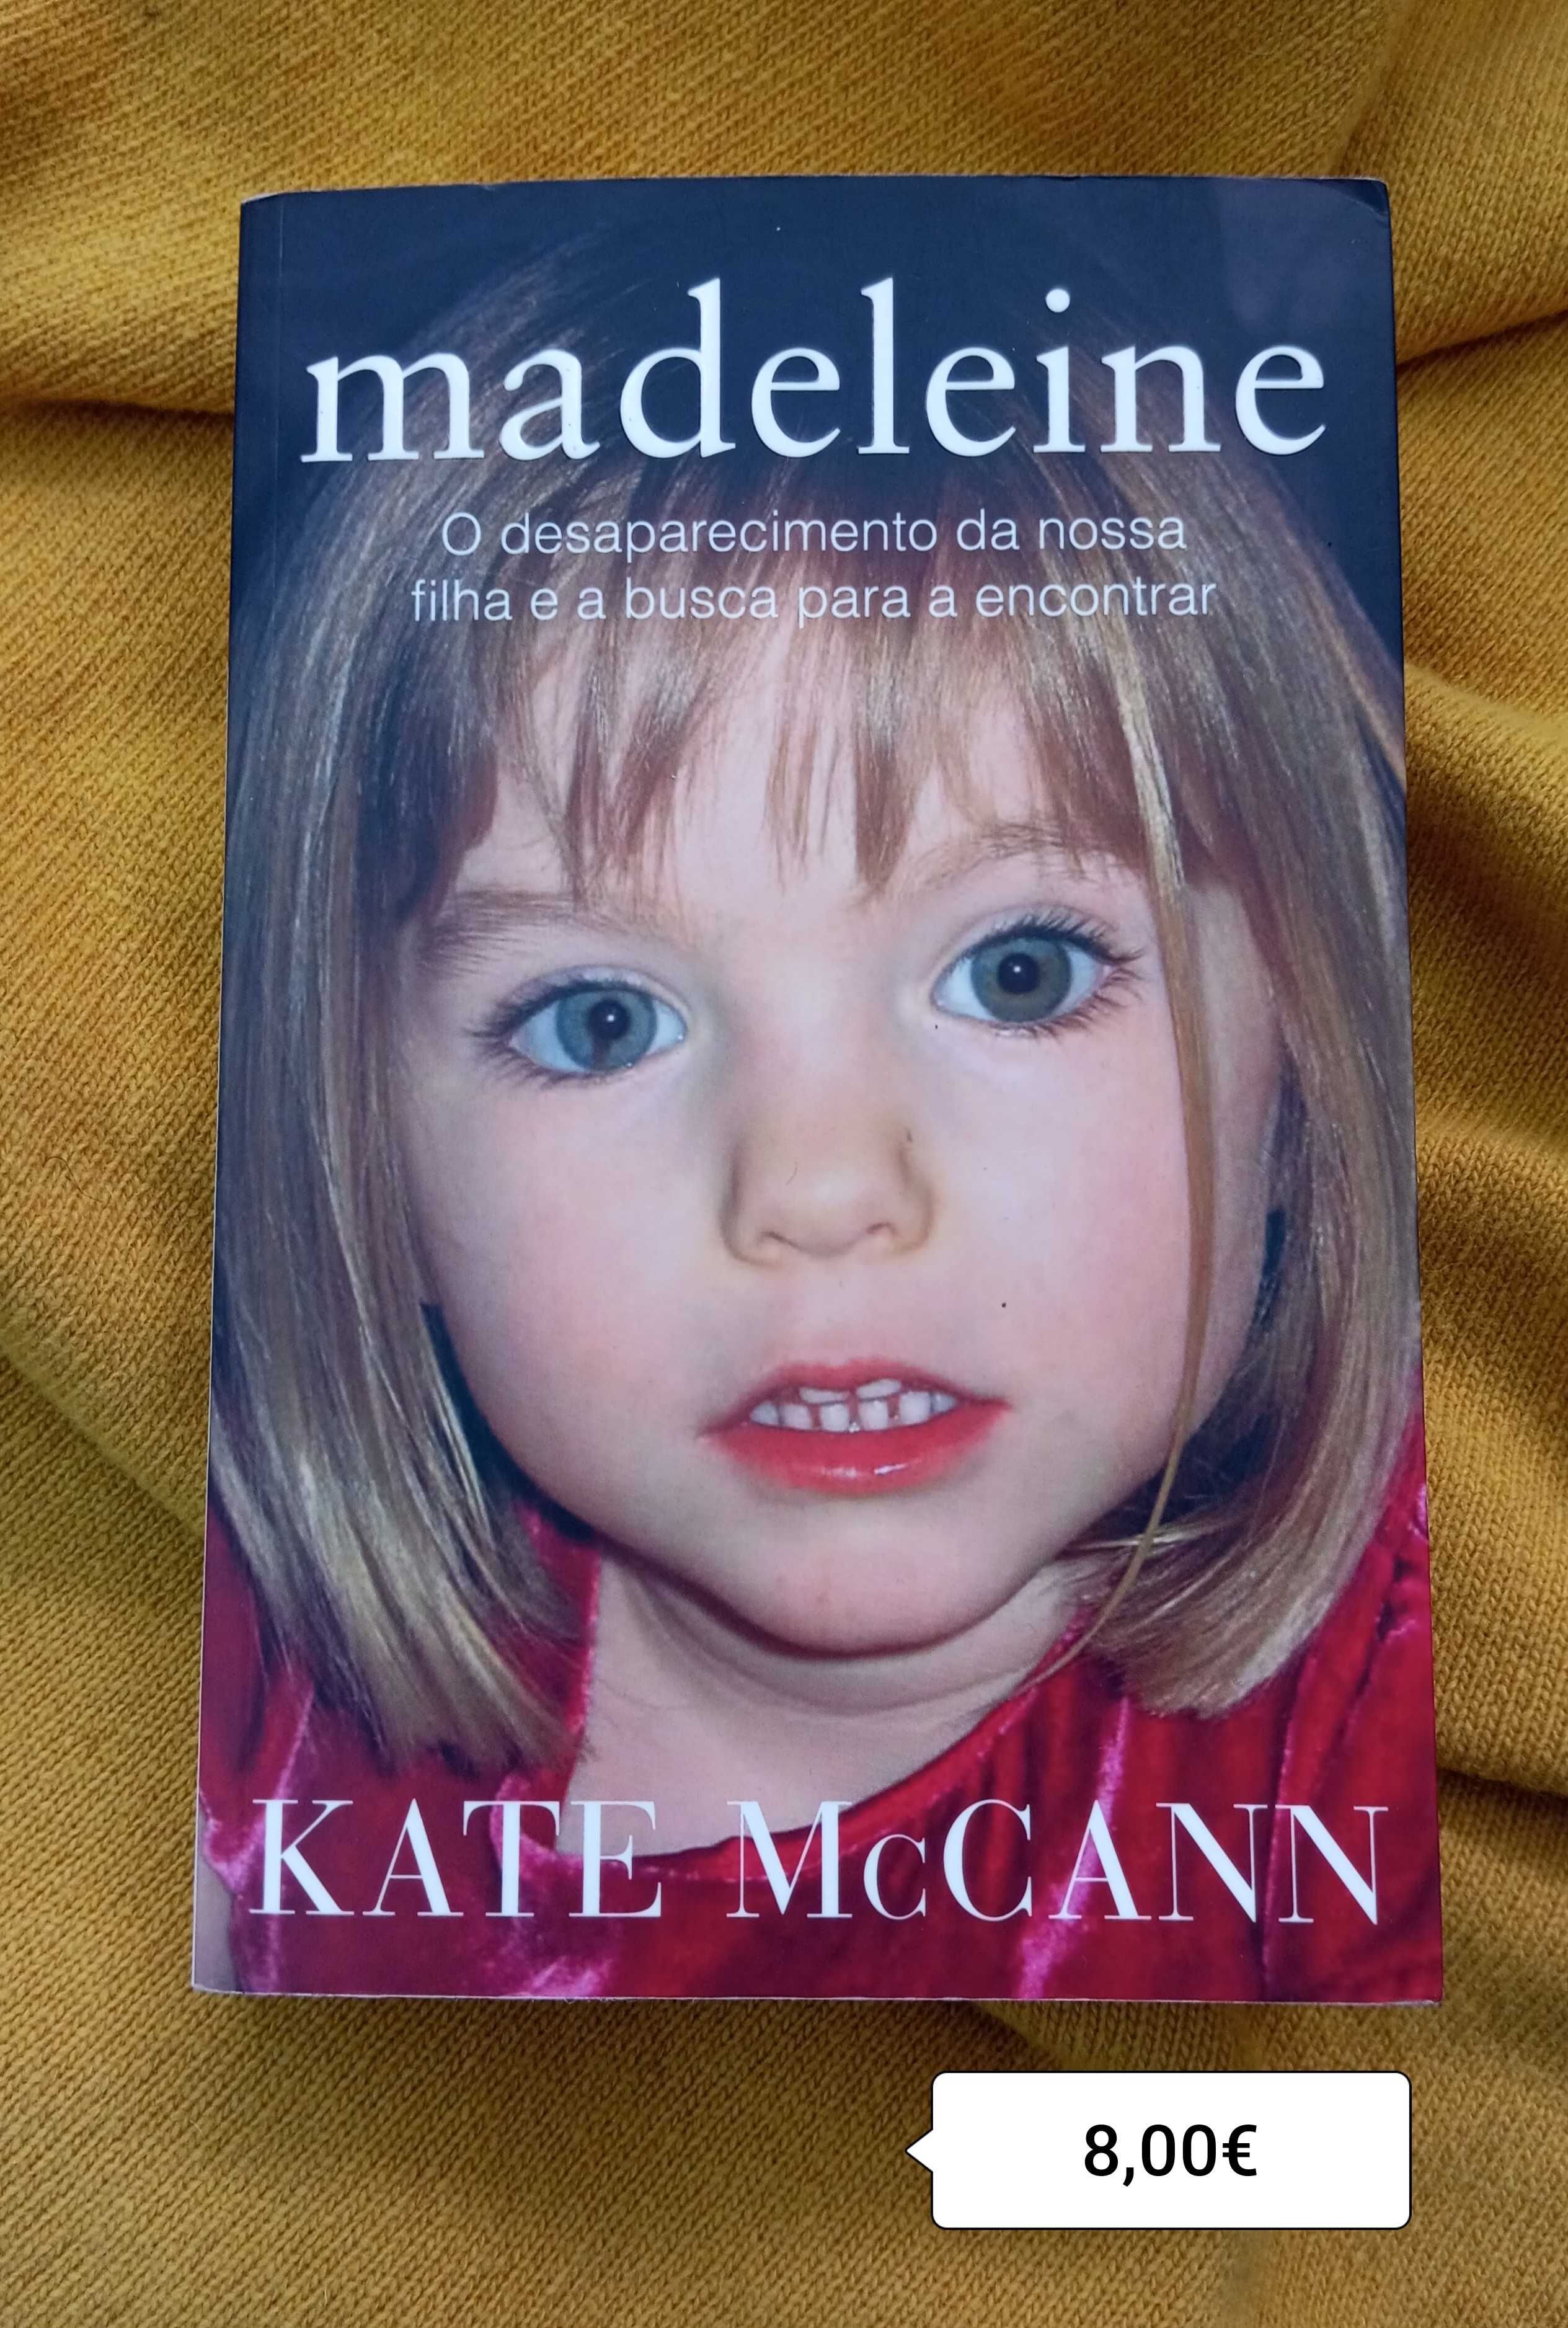 MADELEINE  / Kate McCann - Portes incluídos